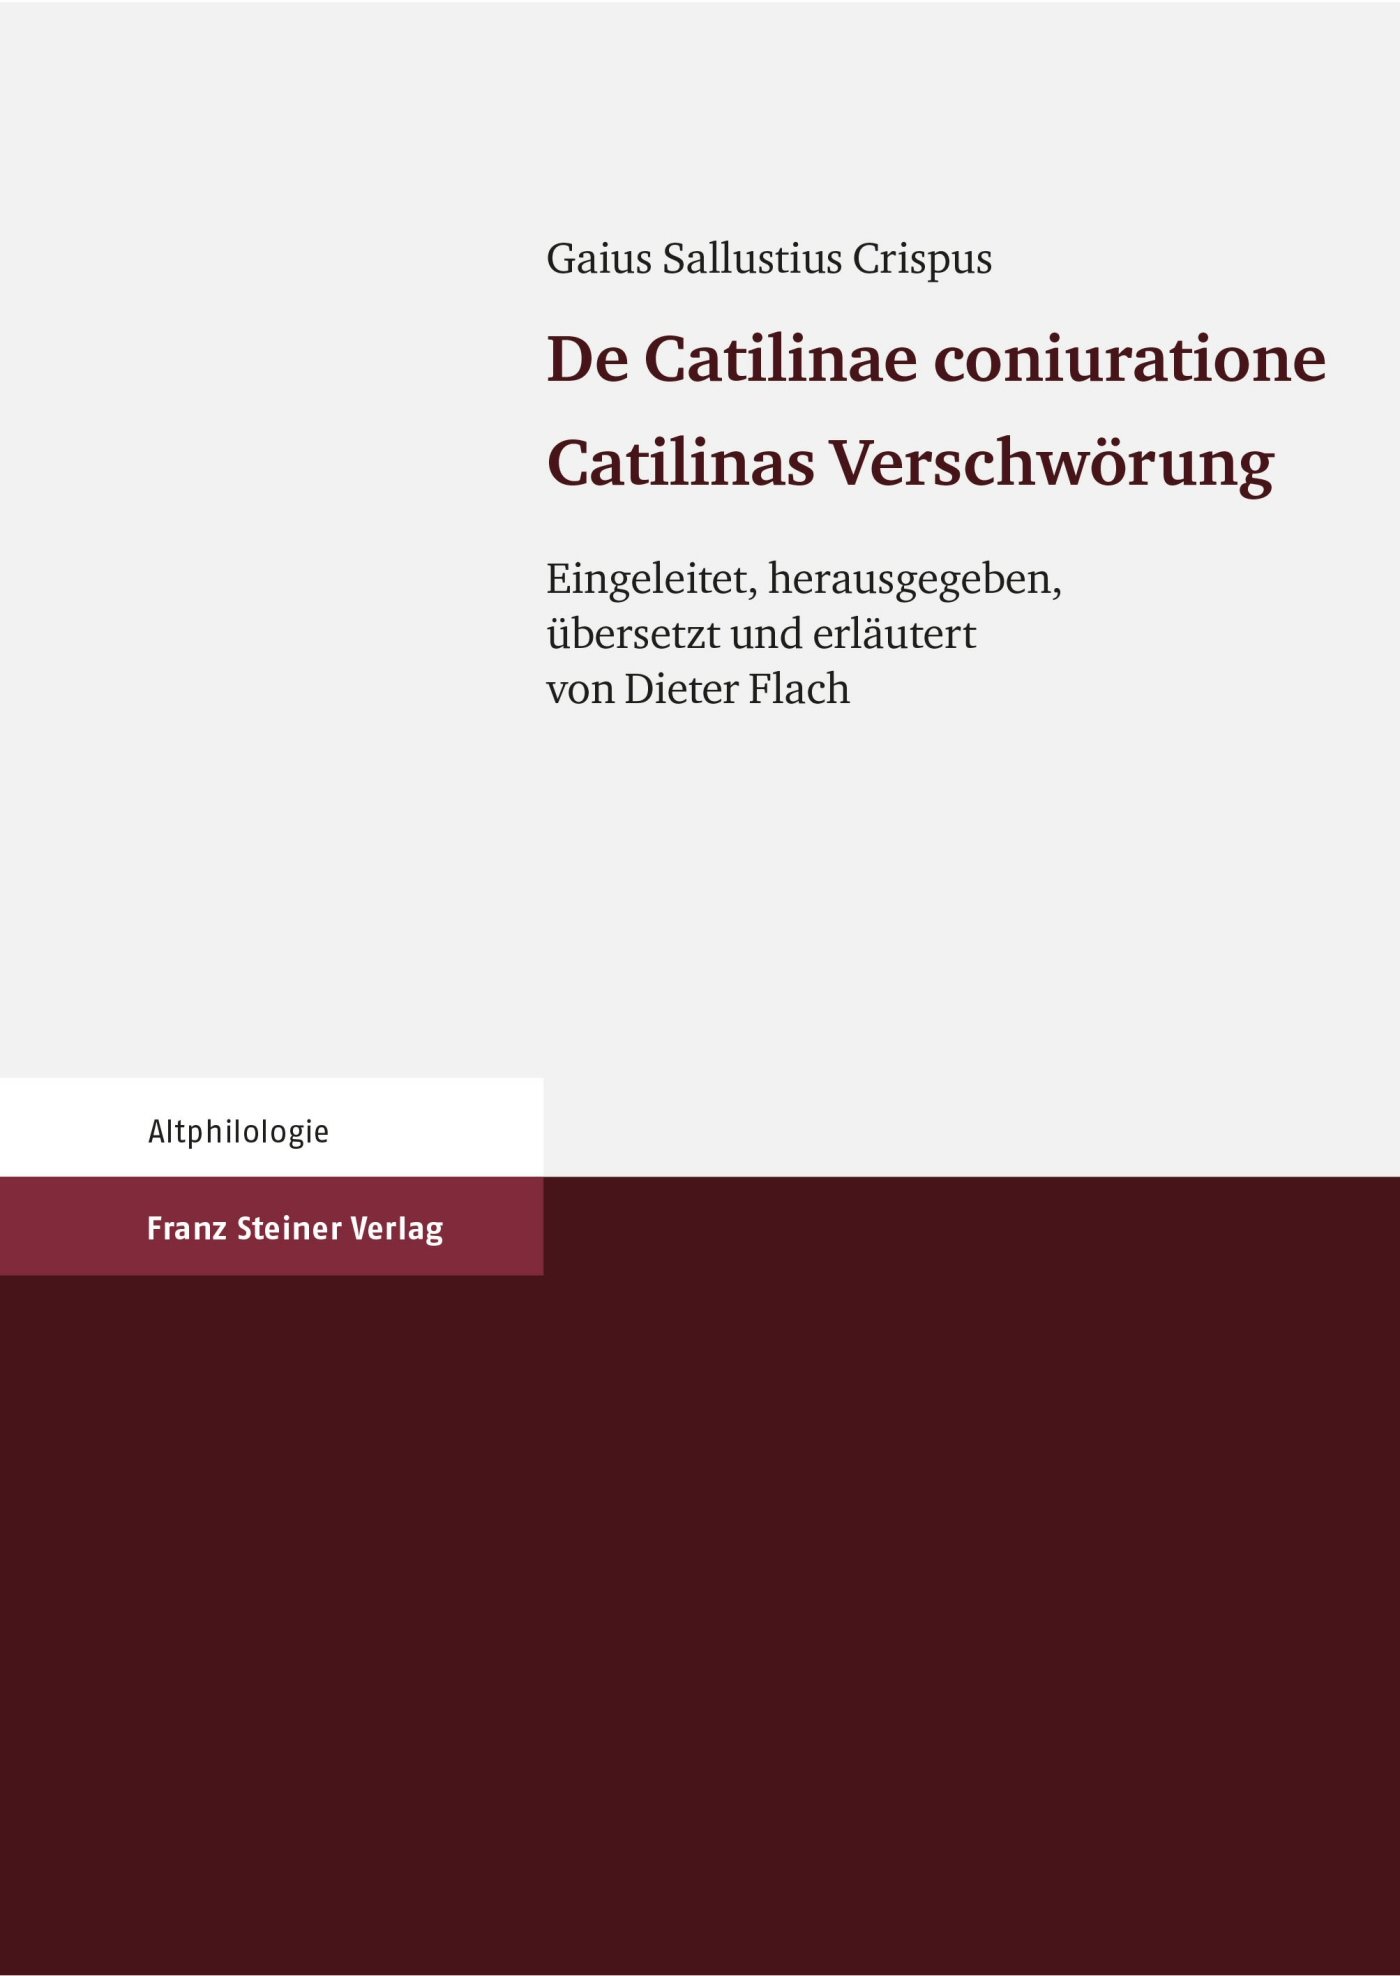 Gaius Sallustius Crispus: De Catilinae coniuratione. Catilinas Verschwörung